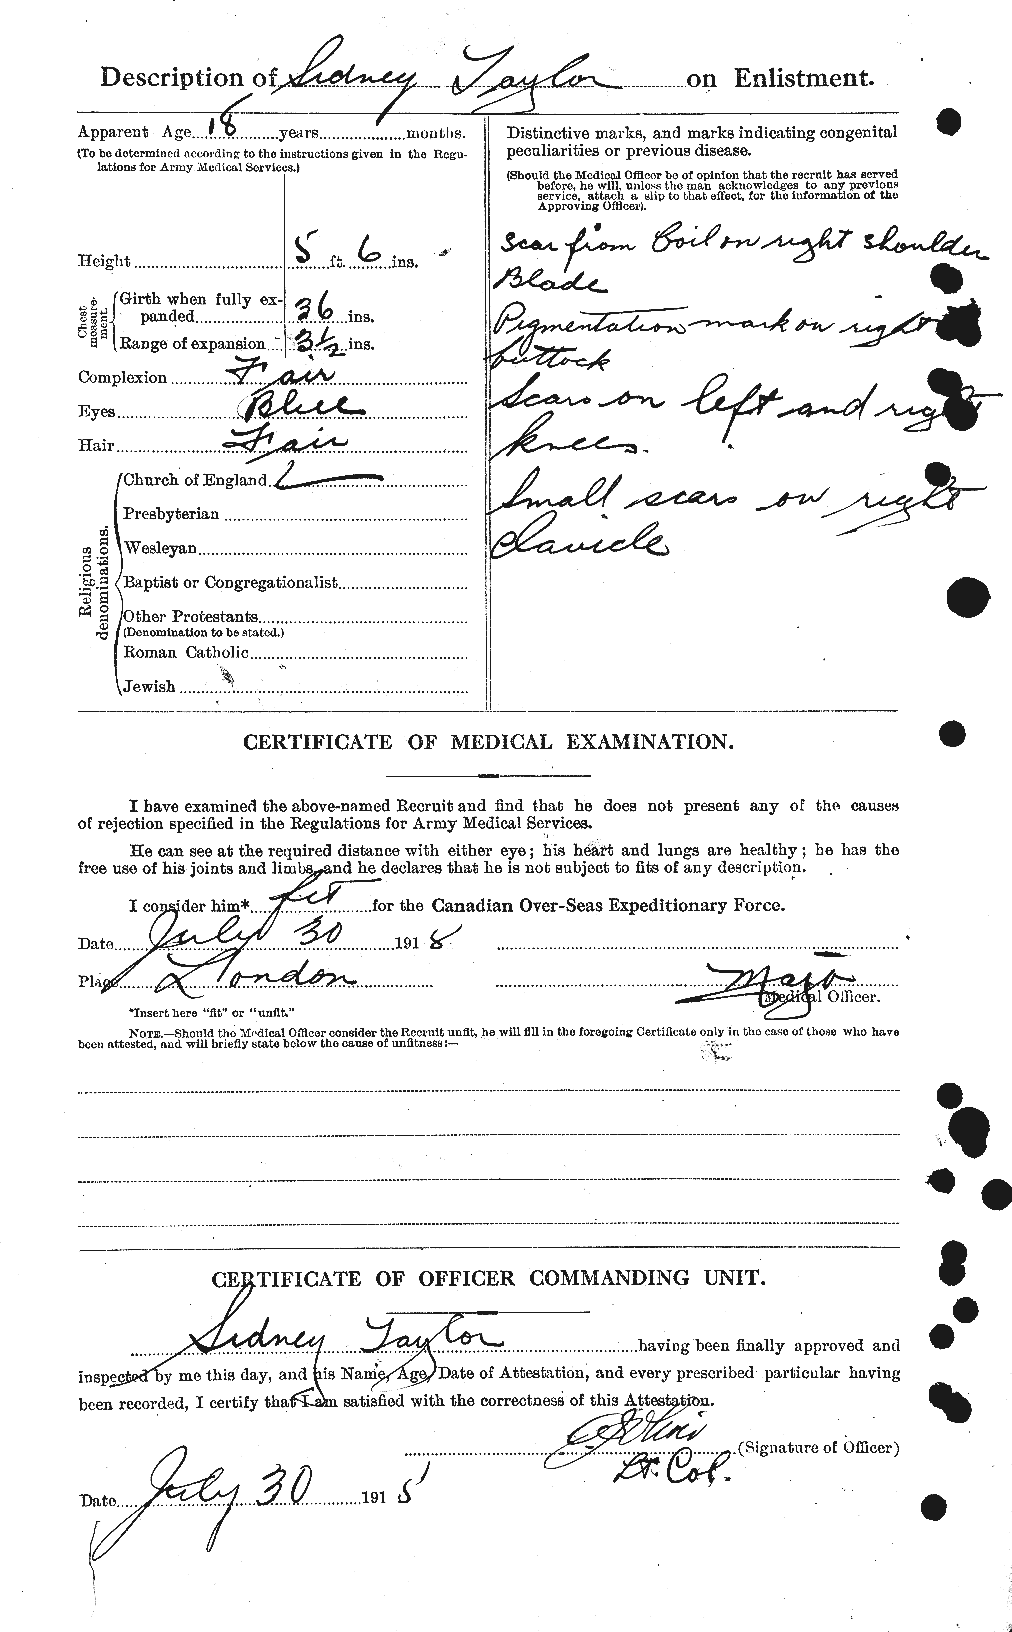 Dossiers du Personnel de la Première Guerre mondiale - CEC 627898b